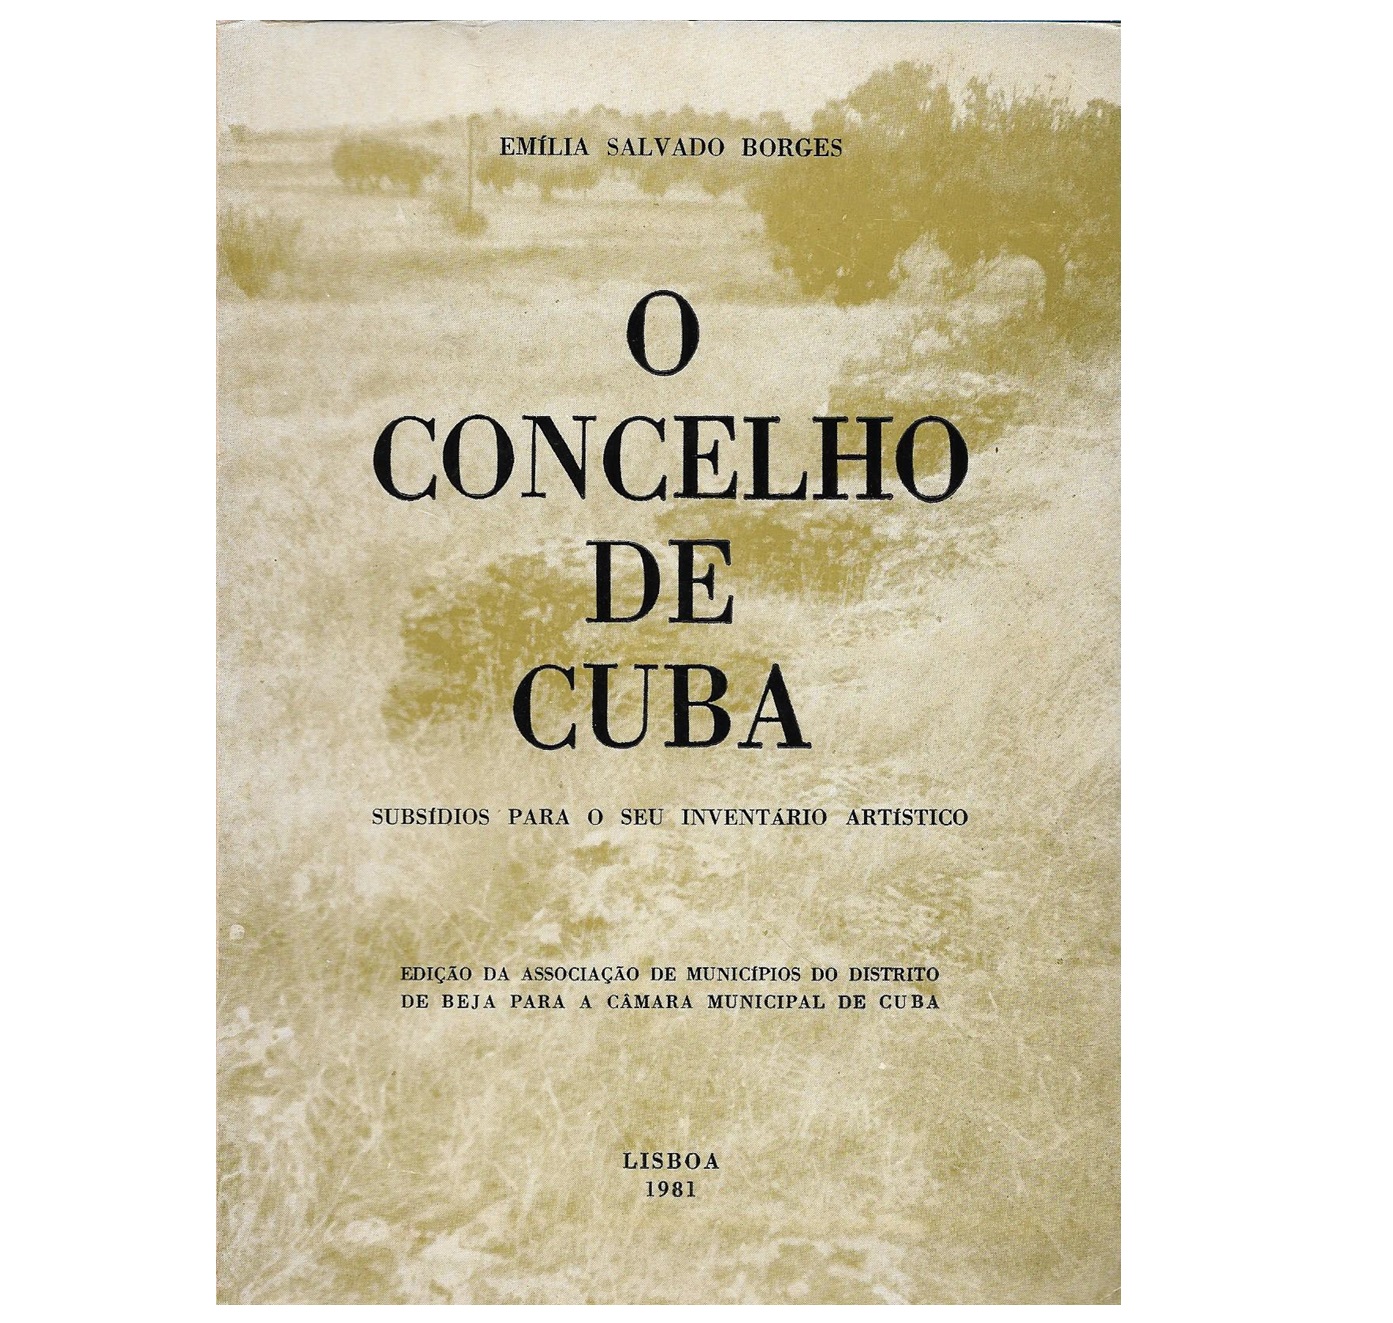 O CONCELHO DE CUBA